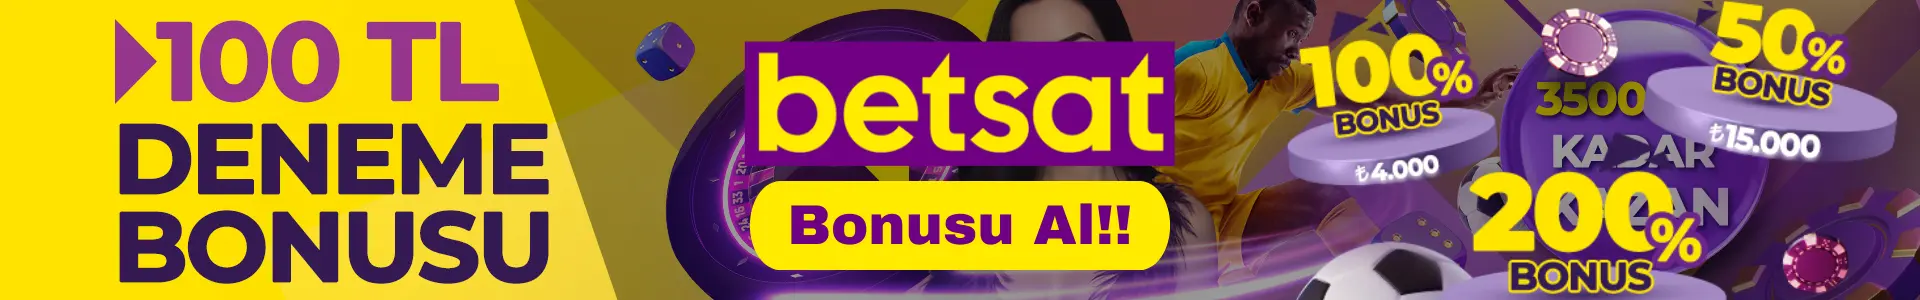 Betsat Bedava Bonus Al